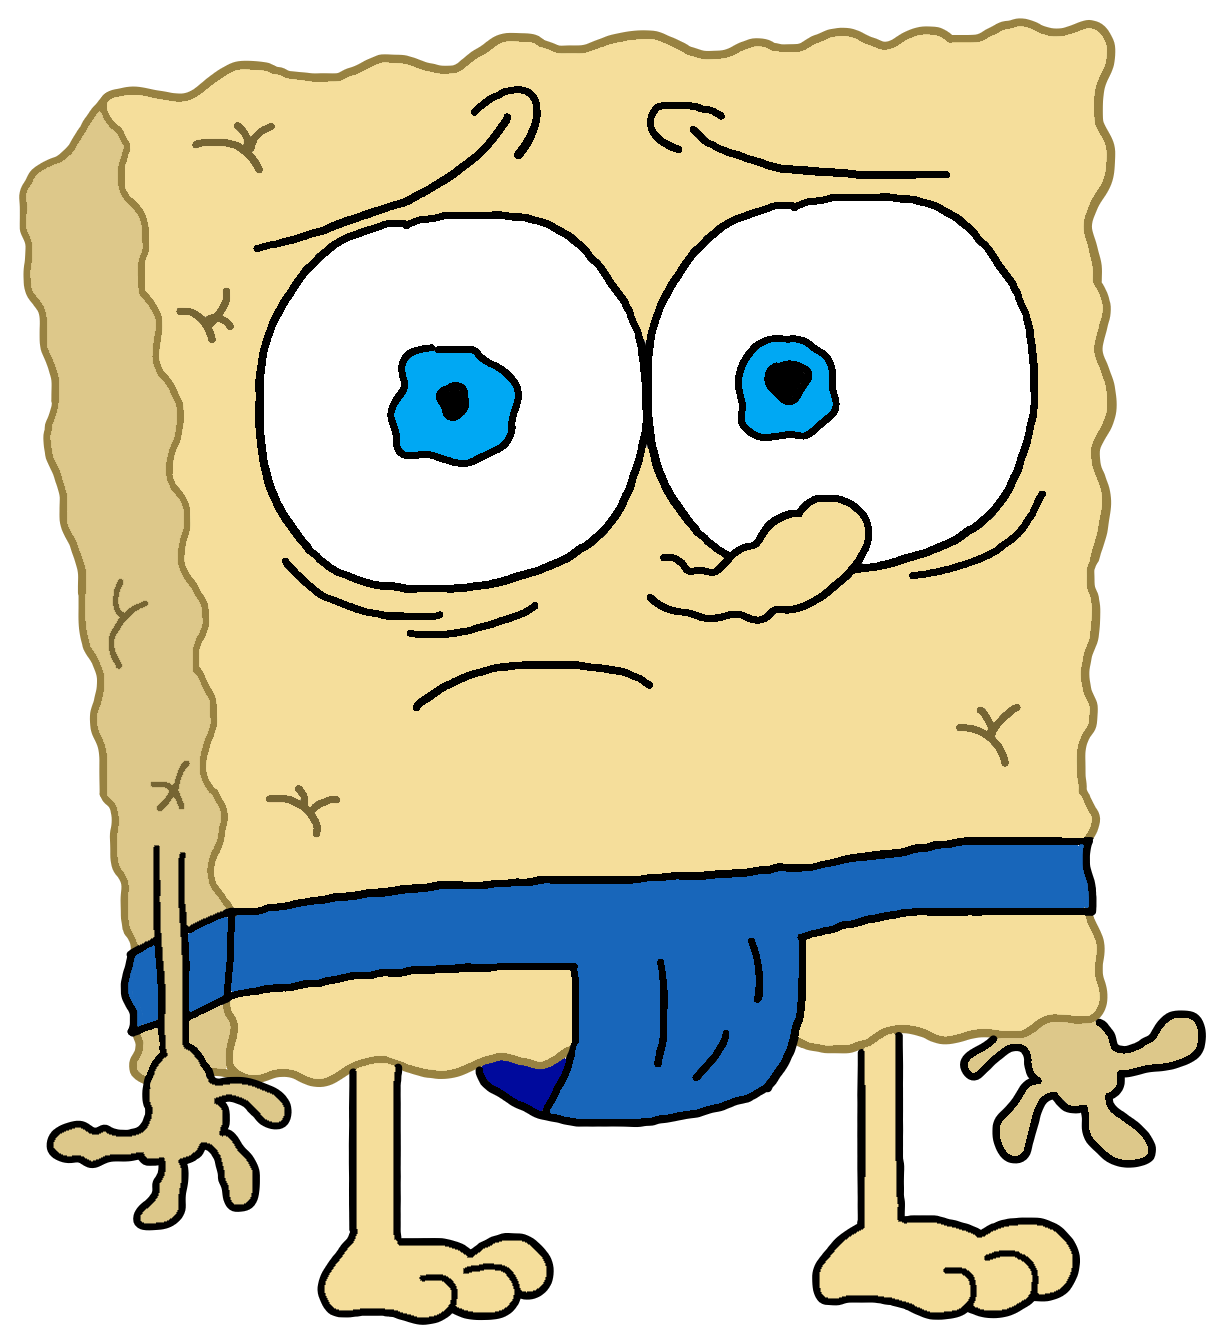 Sad SpongeBob (Transparent meme PNG) by SodiiumArt on DeviantArt